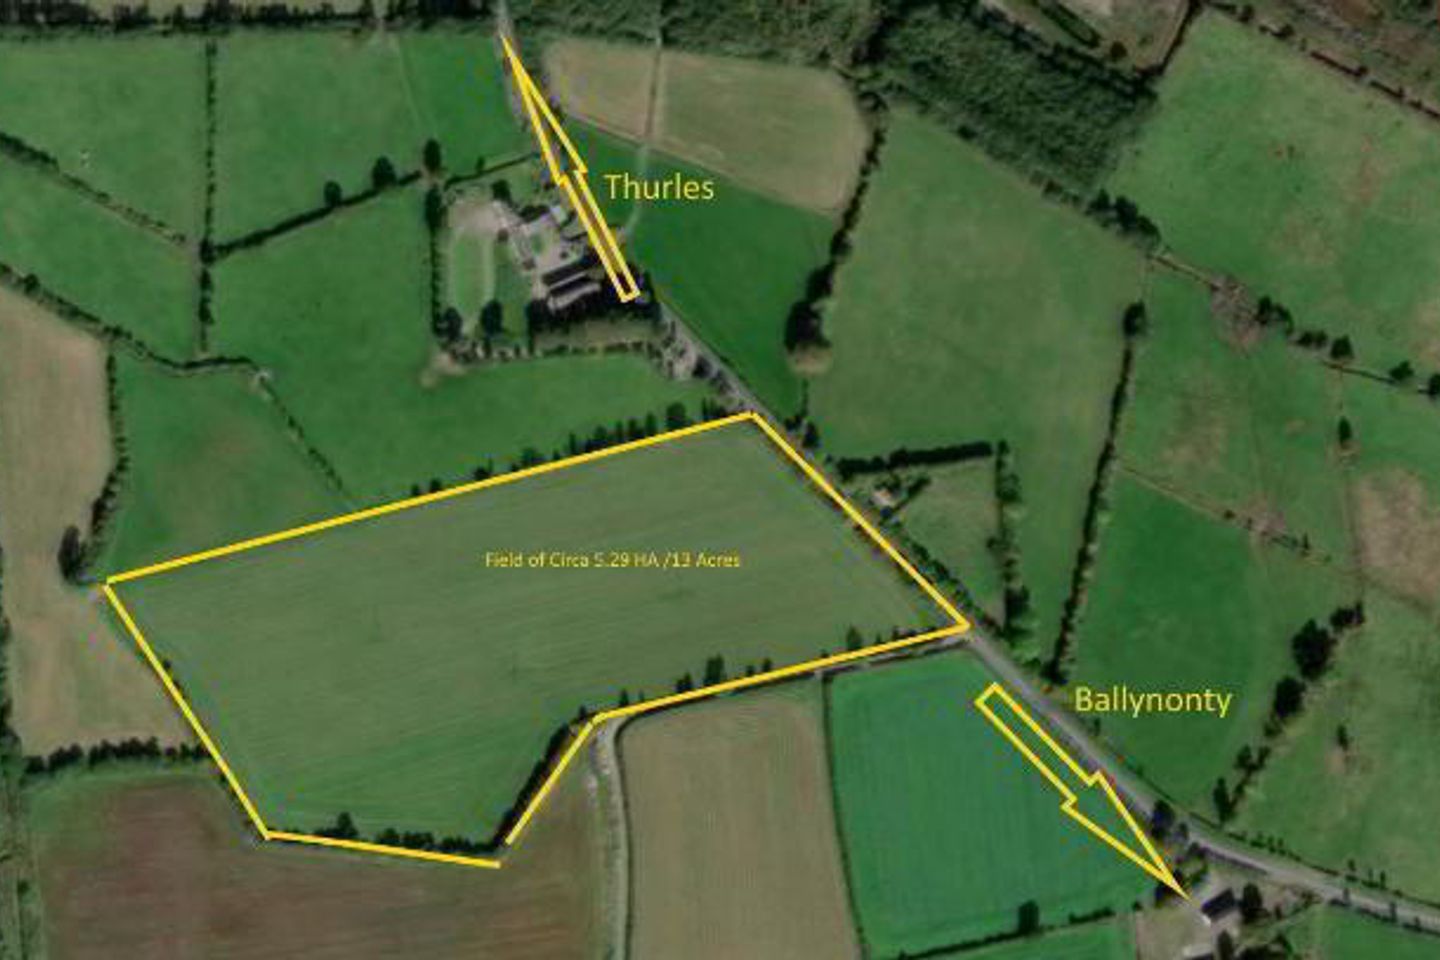 Circa 13 Acres At,Lanespark/Kileen, Ballynonty, Thurles, Co. Tipperary